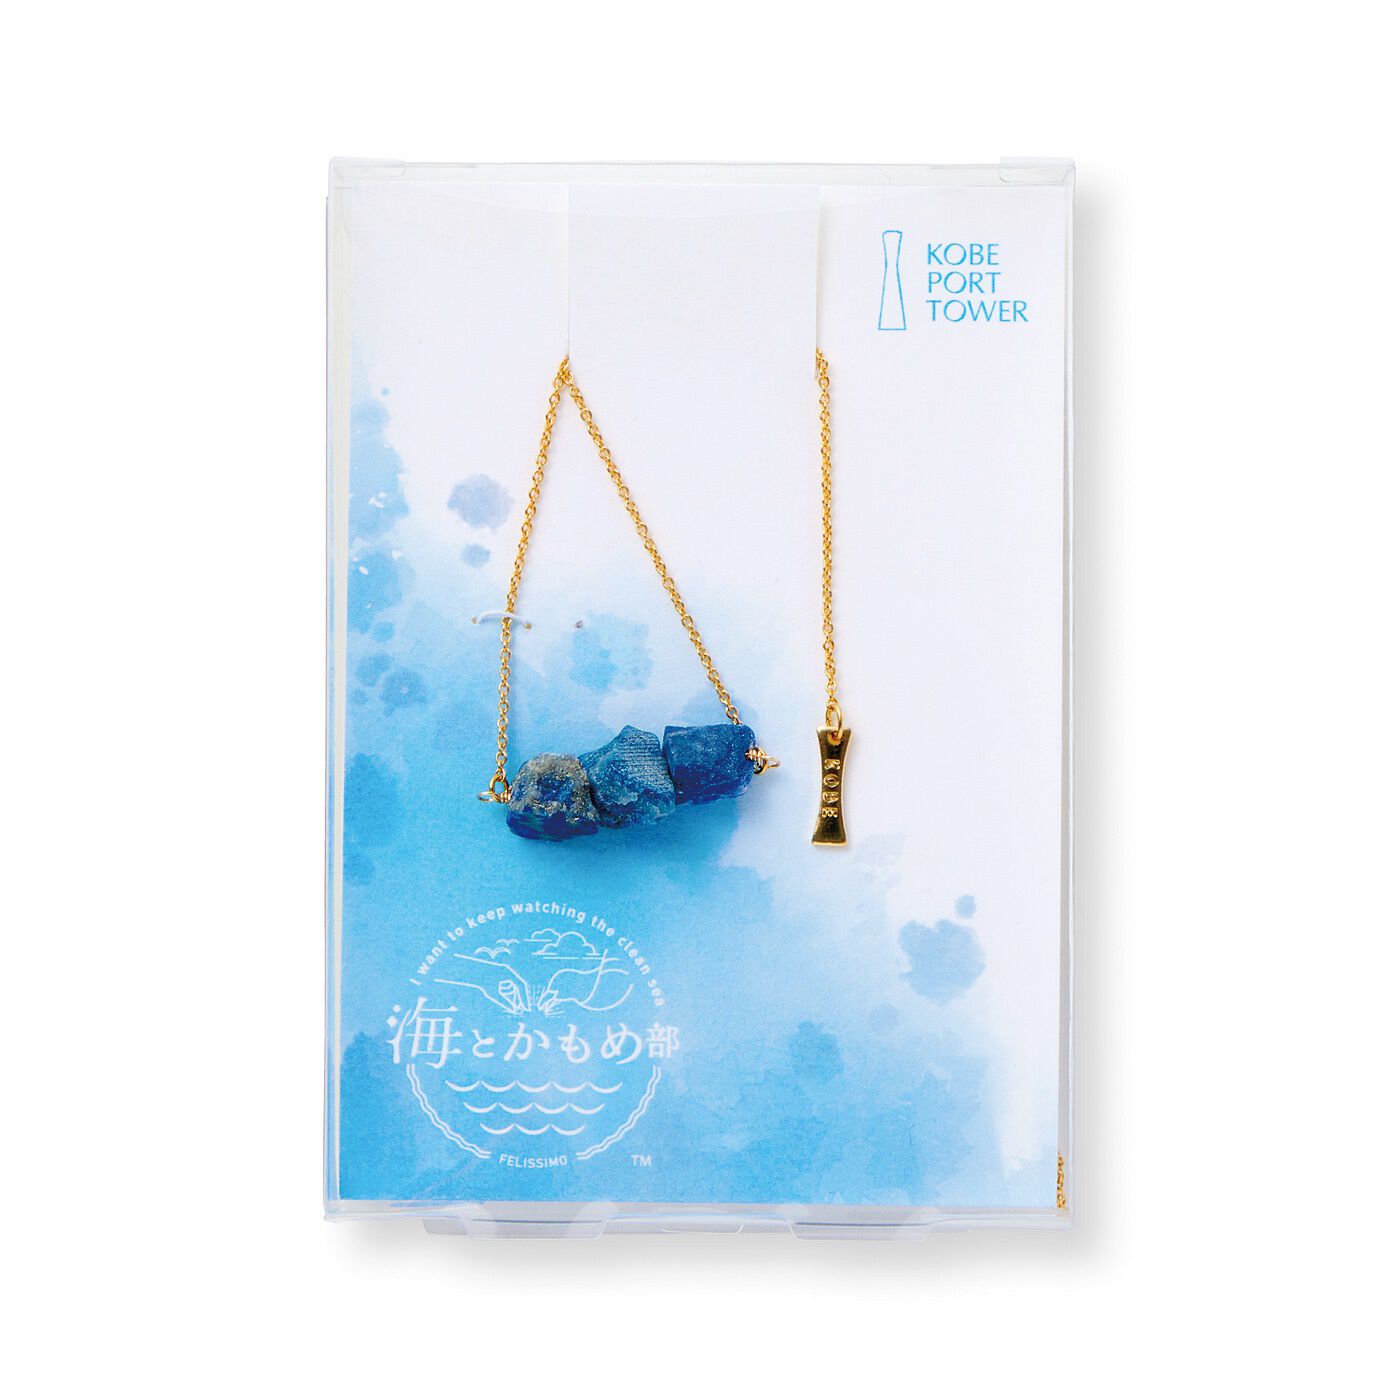 フェリシモの雑貨 Kraso|海とかもめ部×神戸ポートタワー　海の色を映した天然石ネックレスの会|オリジナルパッケージでお届け